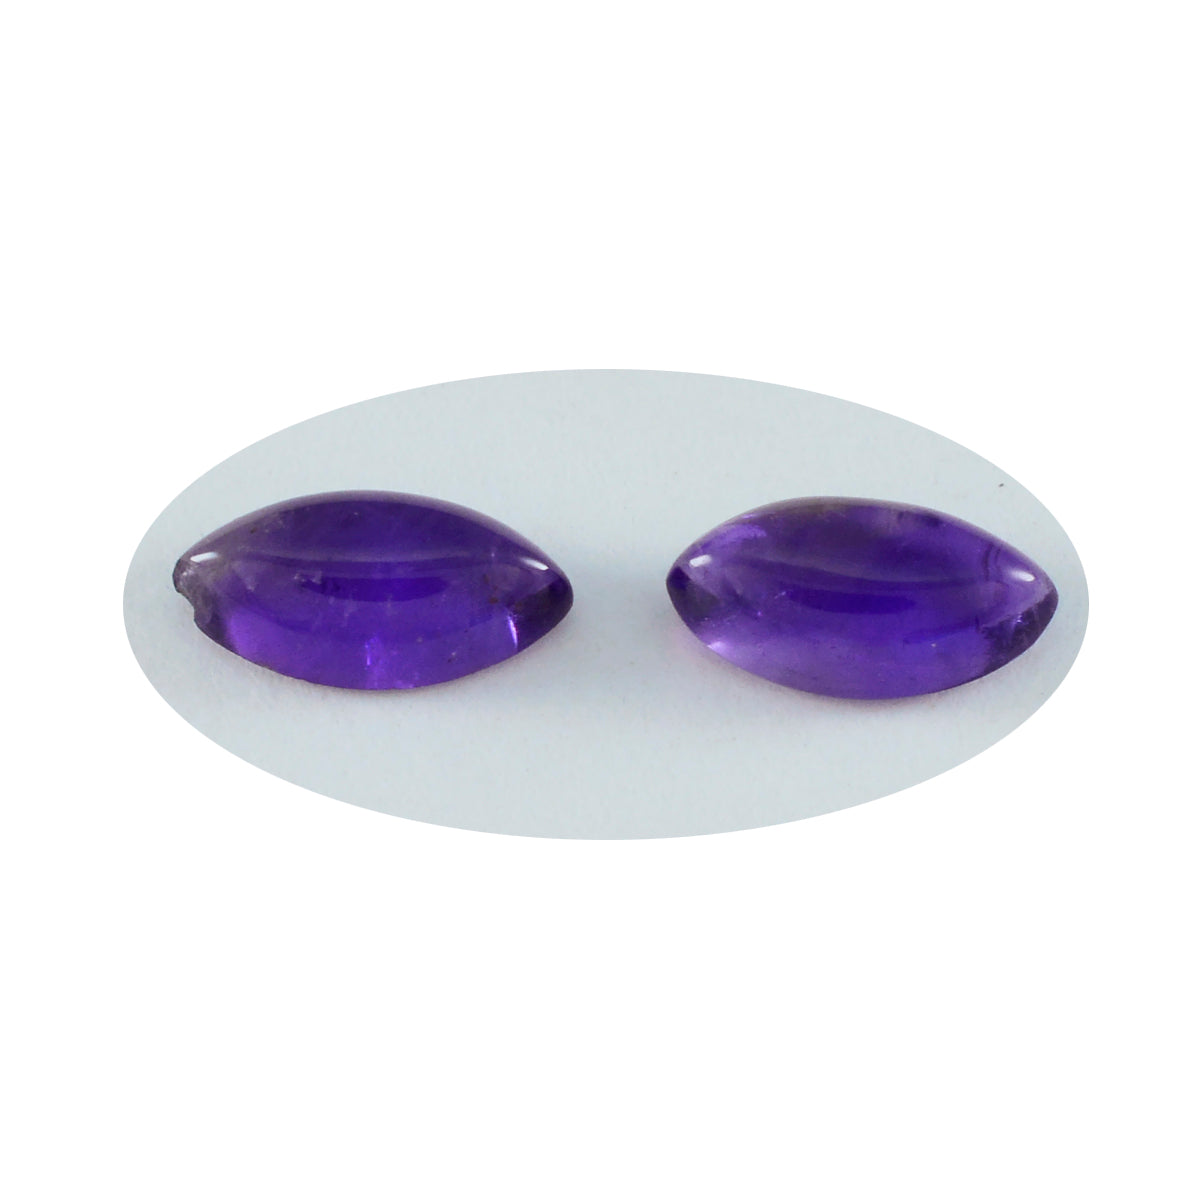 Riyogems 1 pieza cabujón de amatista púrpura 5X10mm forma de marquesa piedra de calidad increíble